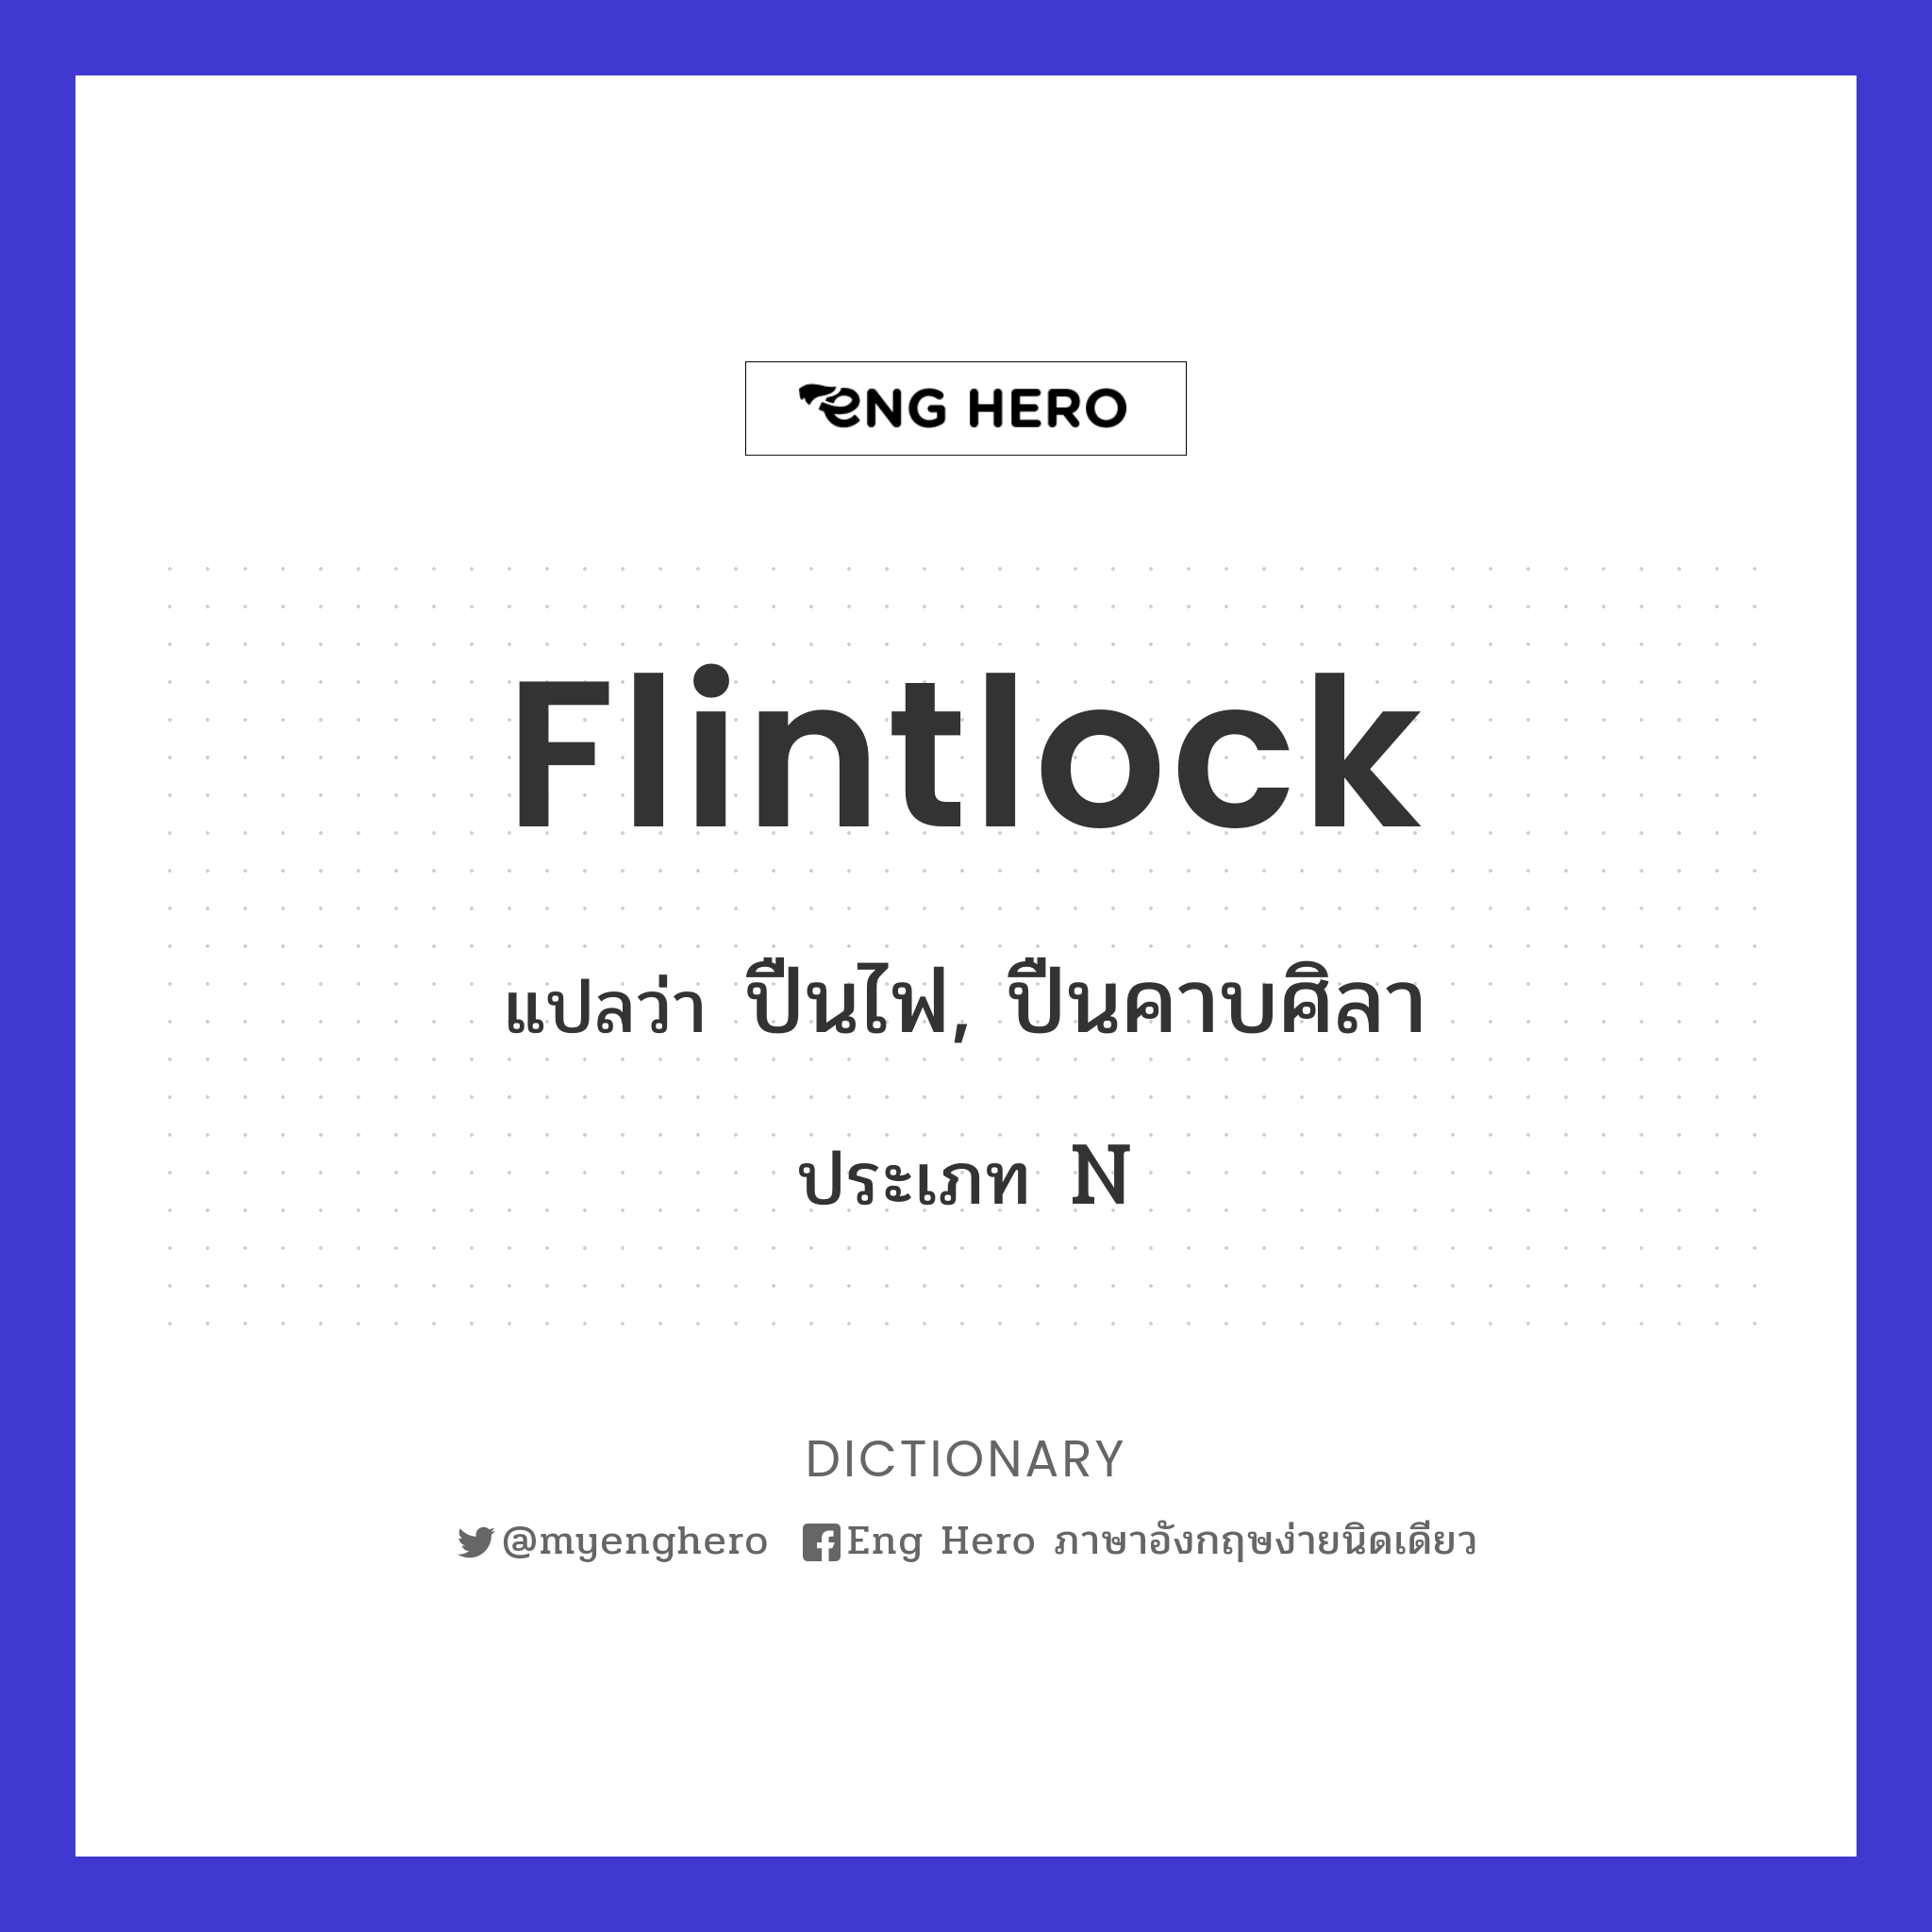 flintlock